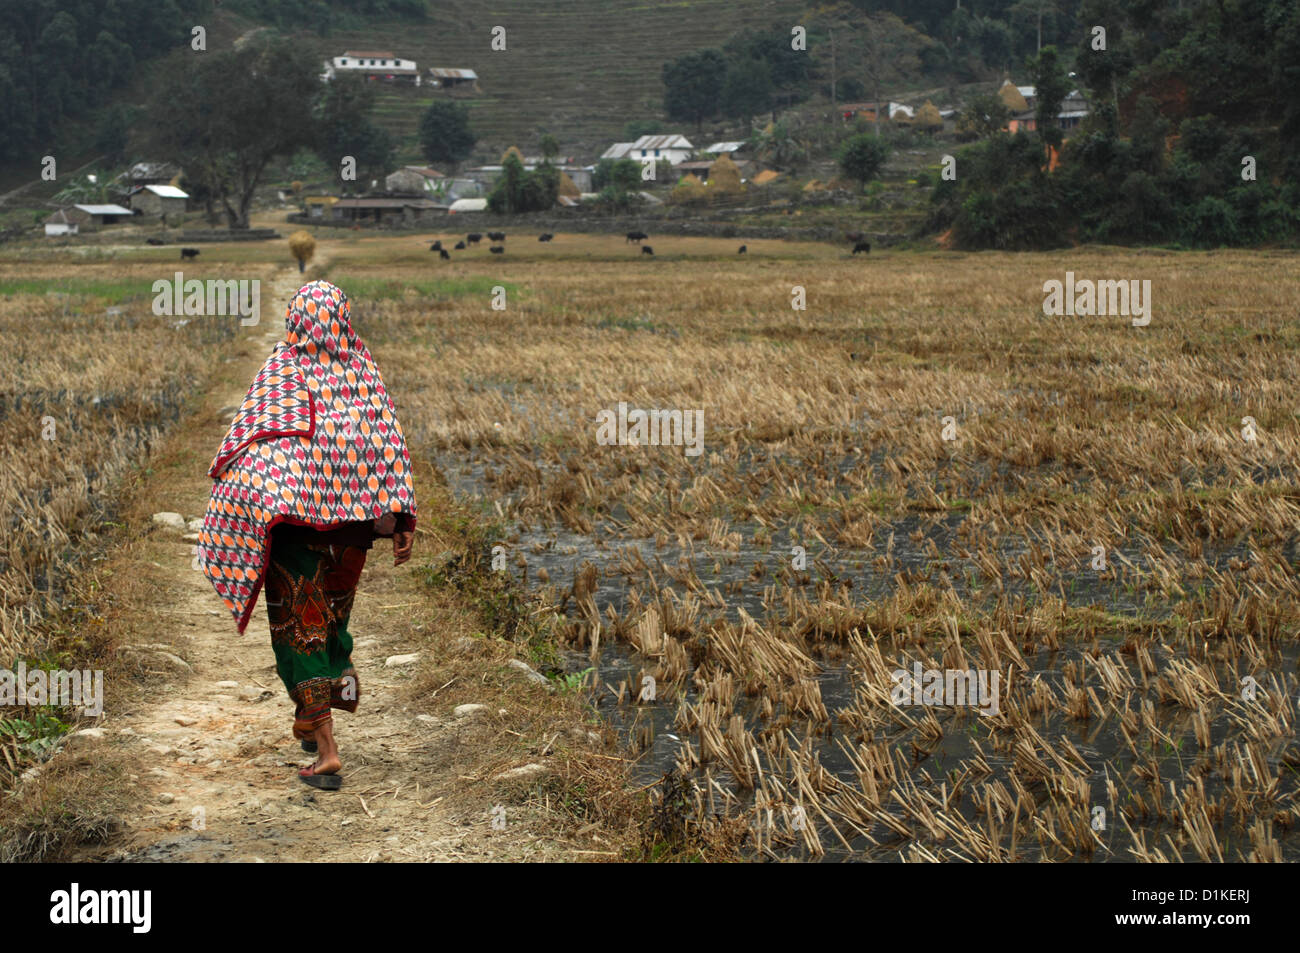 A woman walking in a harvested field in rural village area in Nepal. Near Fewa Tal in Phokara, Nepal Stock Photo